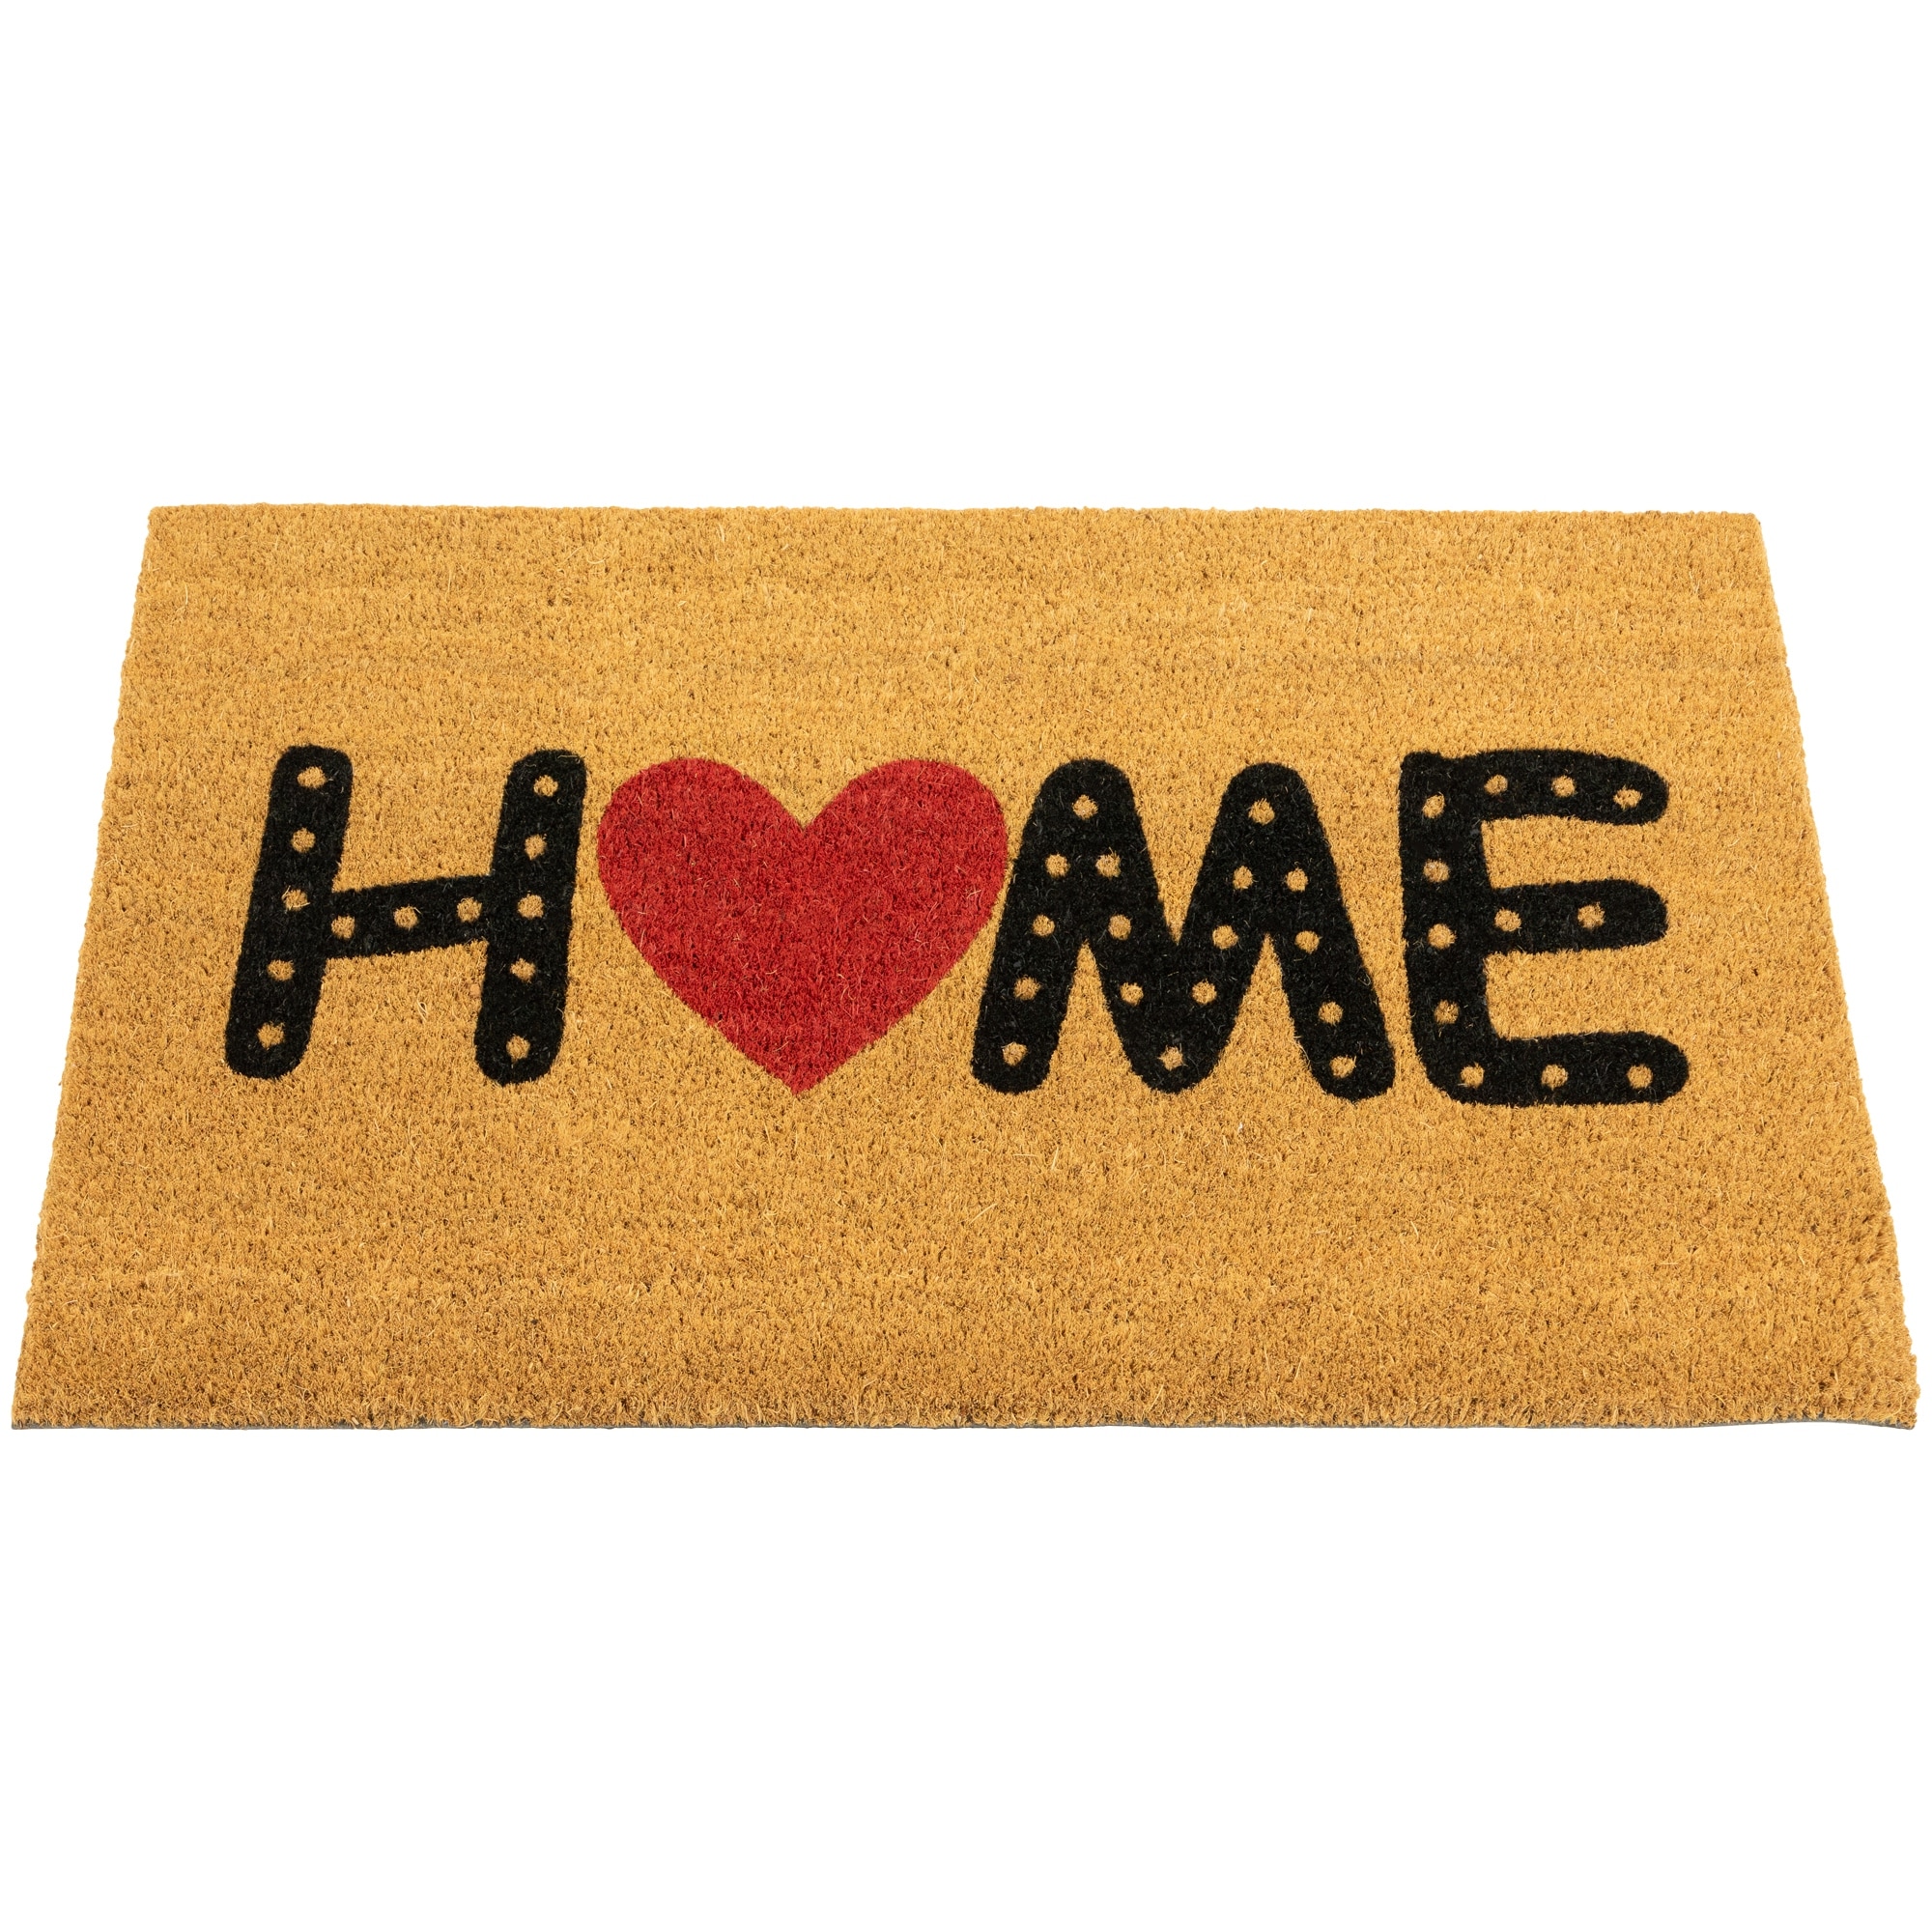 Home'' Outdoor Coir Doormat 18 x 30